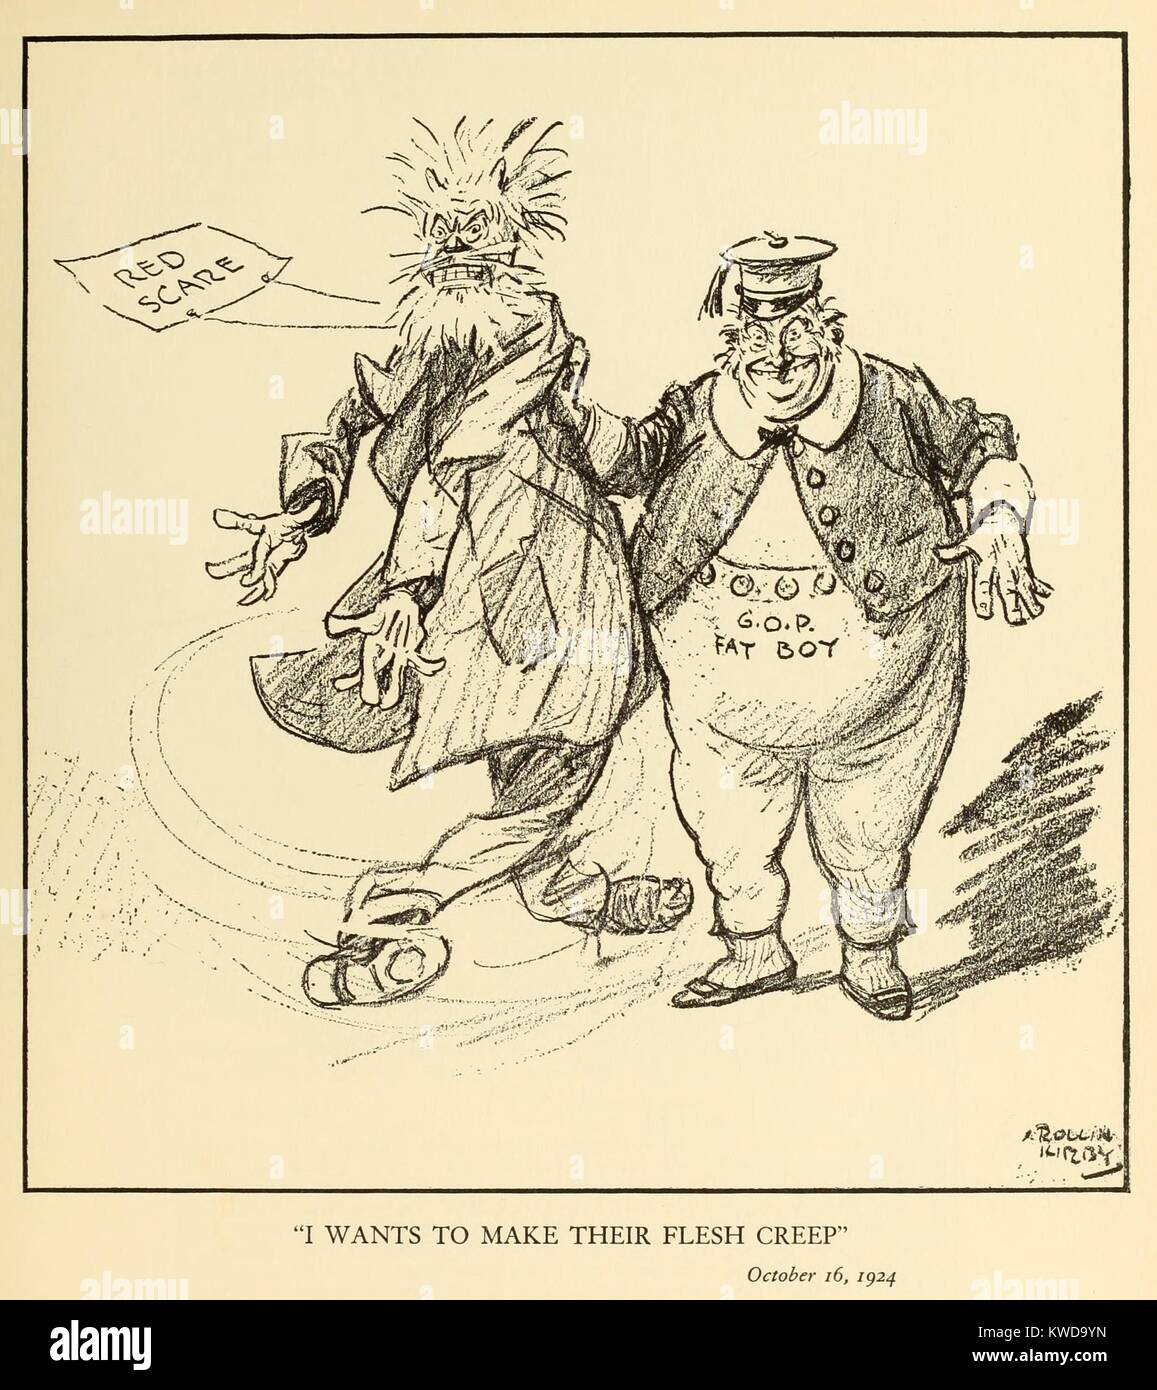 Mi vuole rendere la loro carne di creep. Cartoon politico che mostra un 'G.O.P. Fatboy' sventolare un minaccioso pupazzo che rappresentano il rosso spavento. Da New York World fumettista, Kirby Rollin, 24 ottobre, 1920. (BSLOC 2015 17 242) Foto Stock